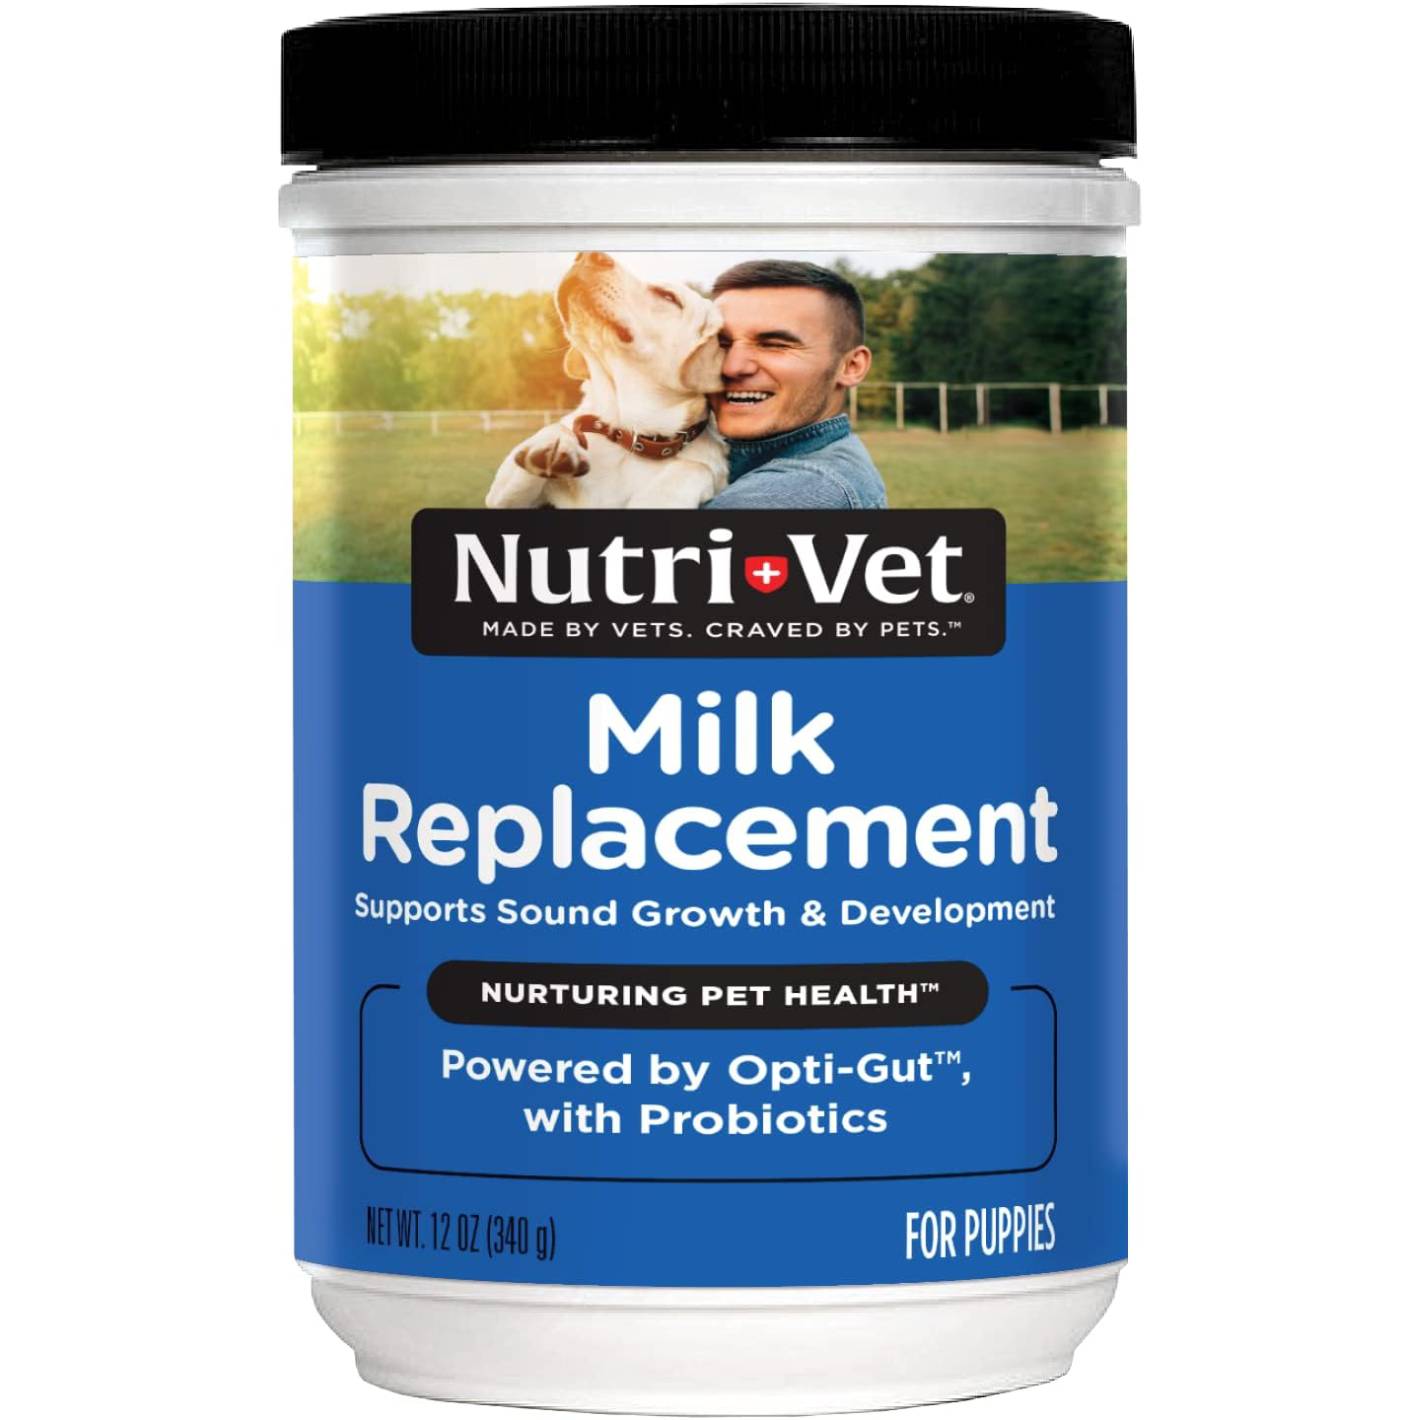 Nutri-Vet Powder Milk Supplement for Dogs